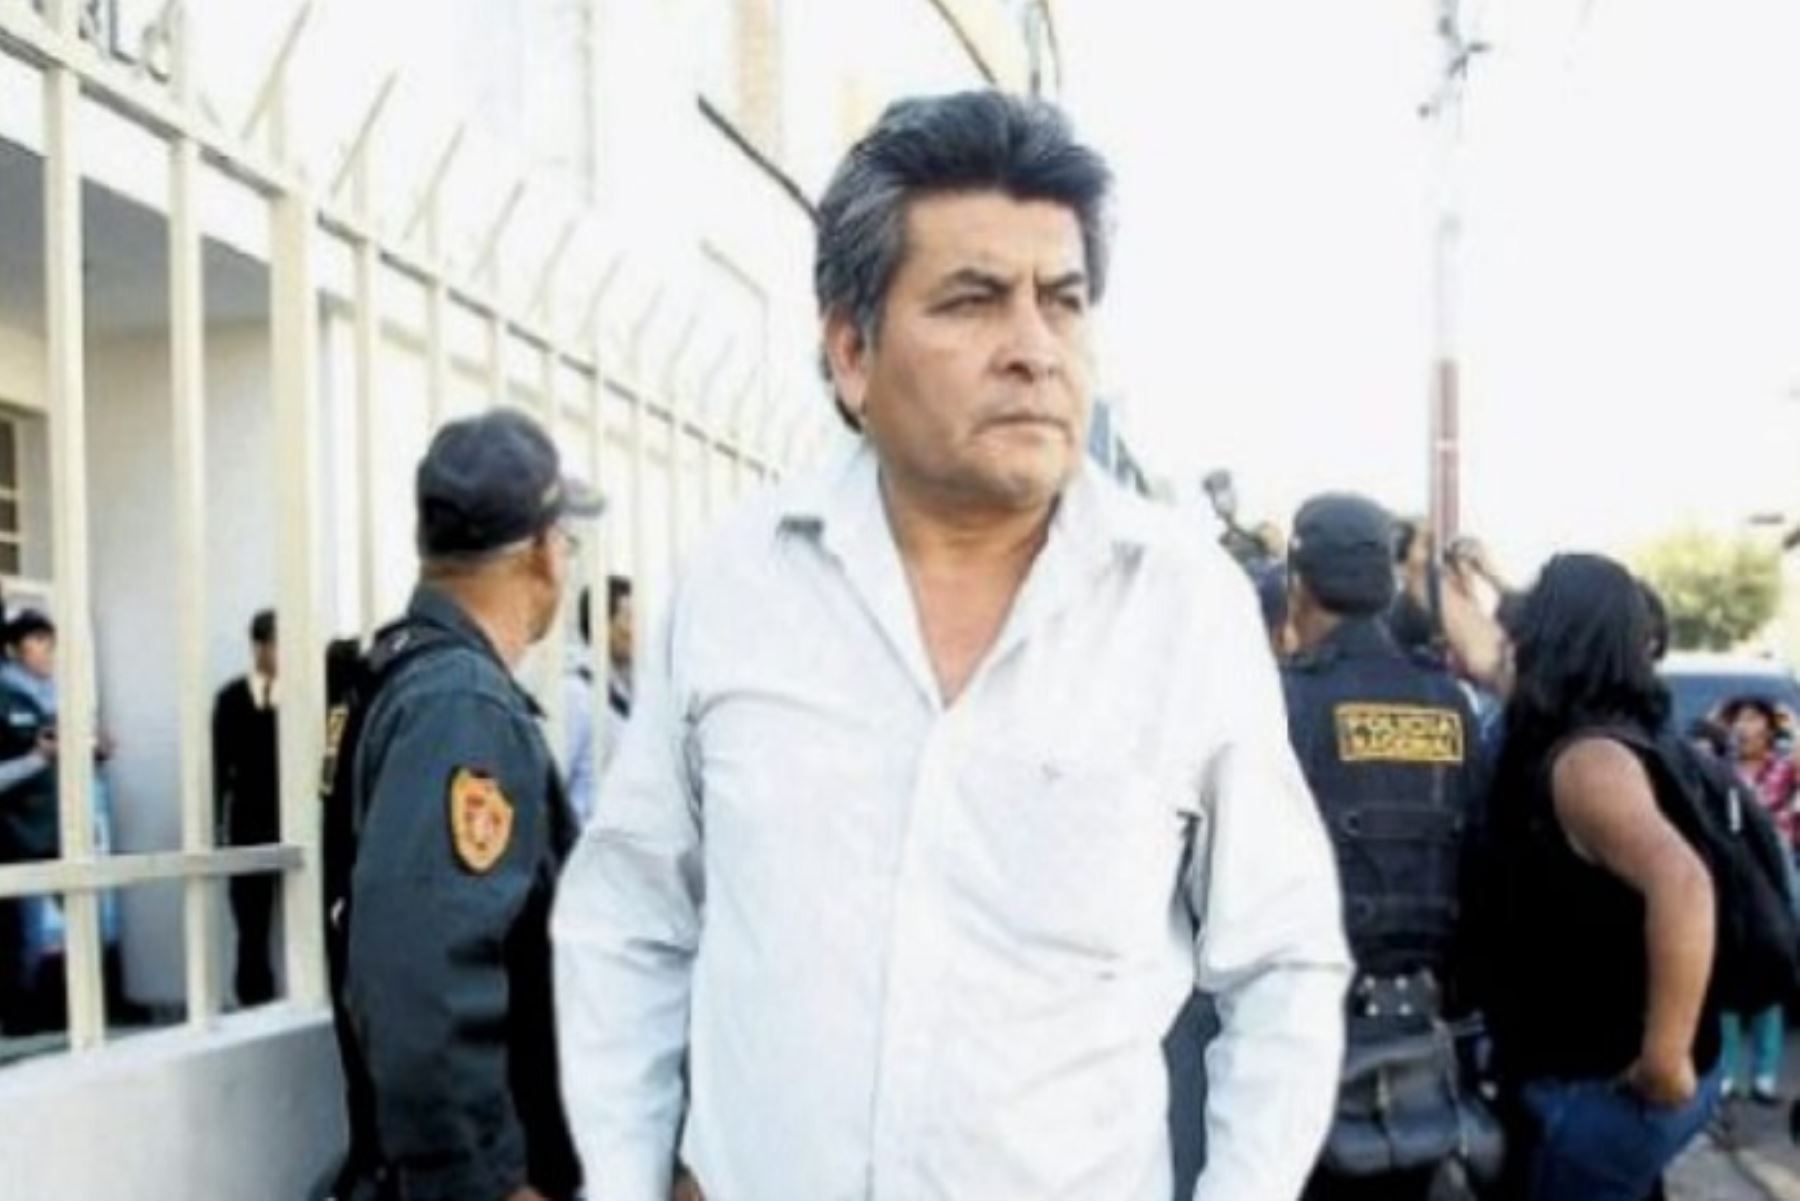 Jaime Trinidad de la Cruz Gallegos deberá cumplir una sentencia de 12 años y cuatro meses de pena privativa de la libertad por los delitos de disturbios, entorpecimiento de los servicios públicos y motín.